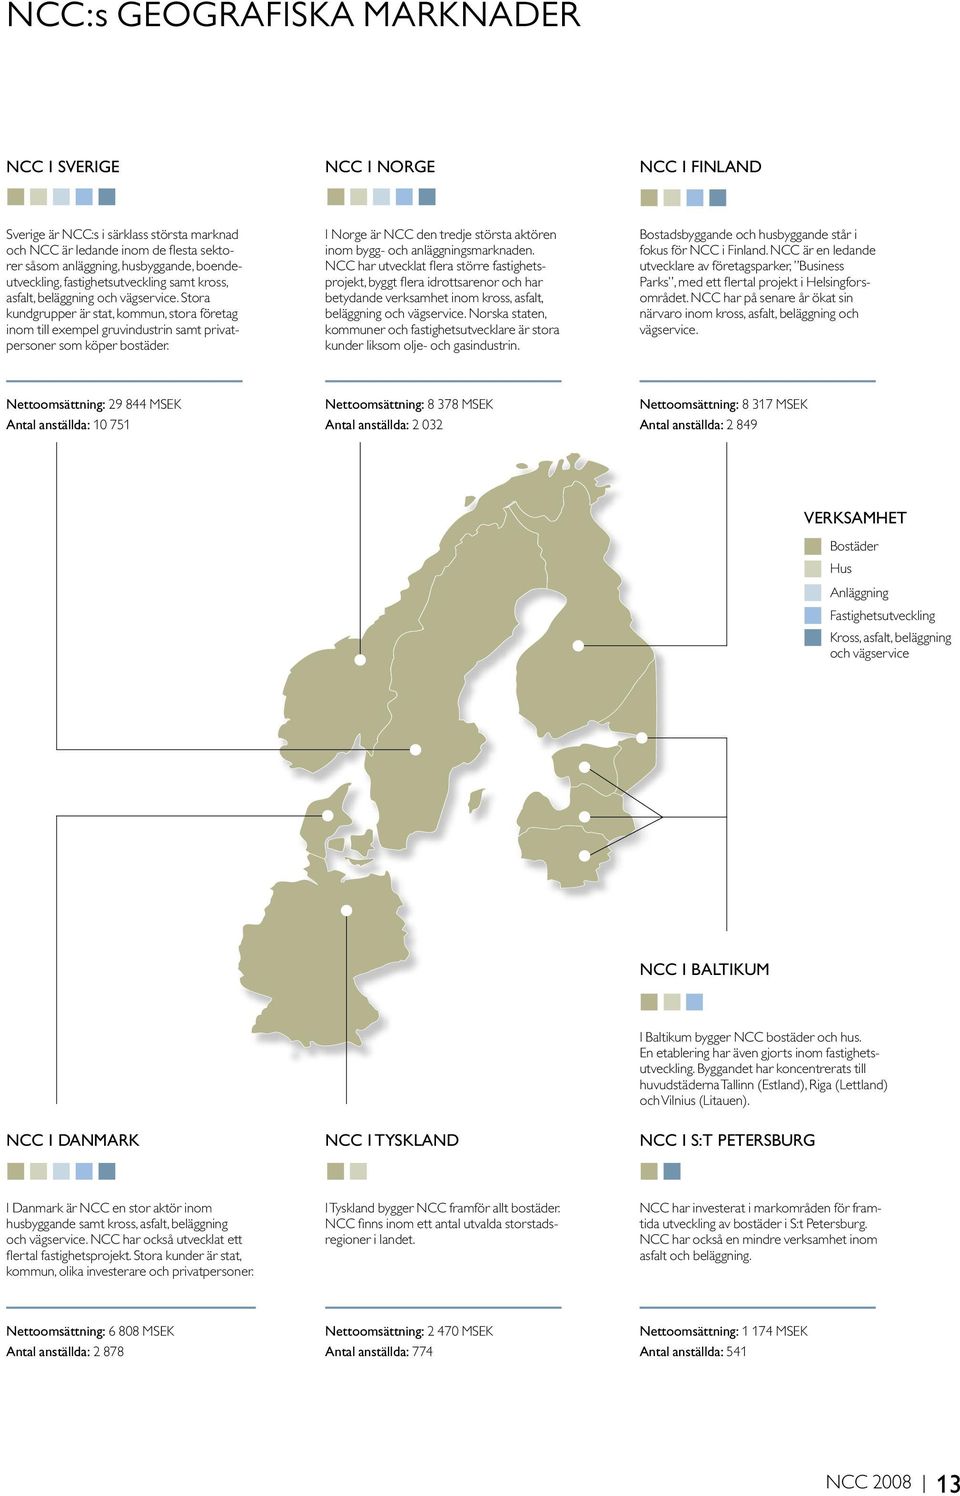 Stora kundgrupper är stat, kommun, stora företag inom till exempel gruvindustrin samt privatpersoner som köper bostäder. I Norge är NCC den tredje största aktören inom bygg- och anläggningsmarknaden.